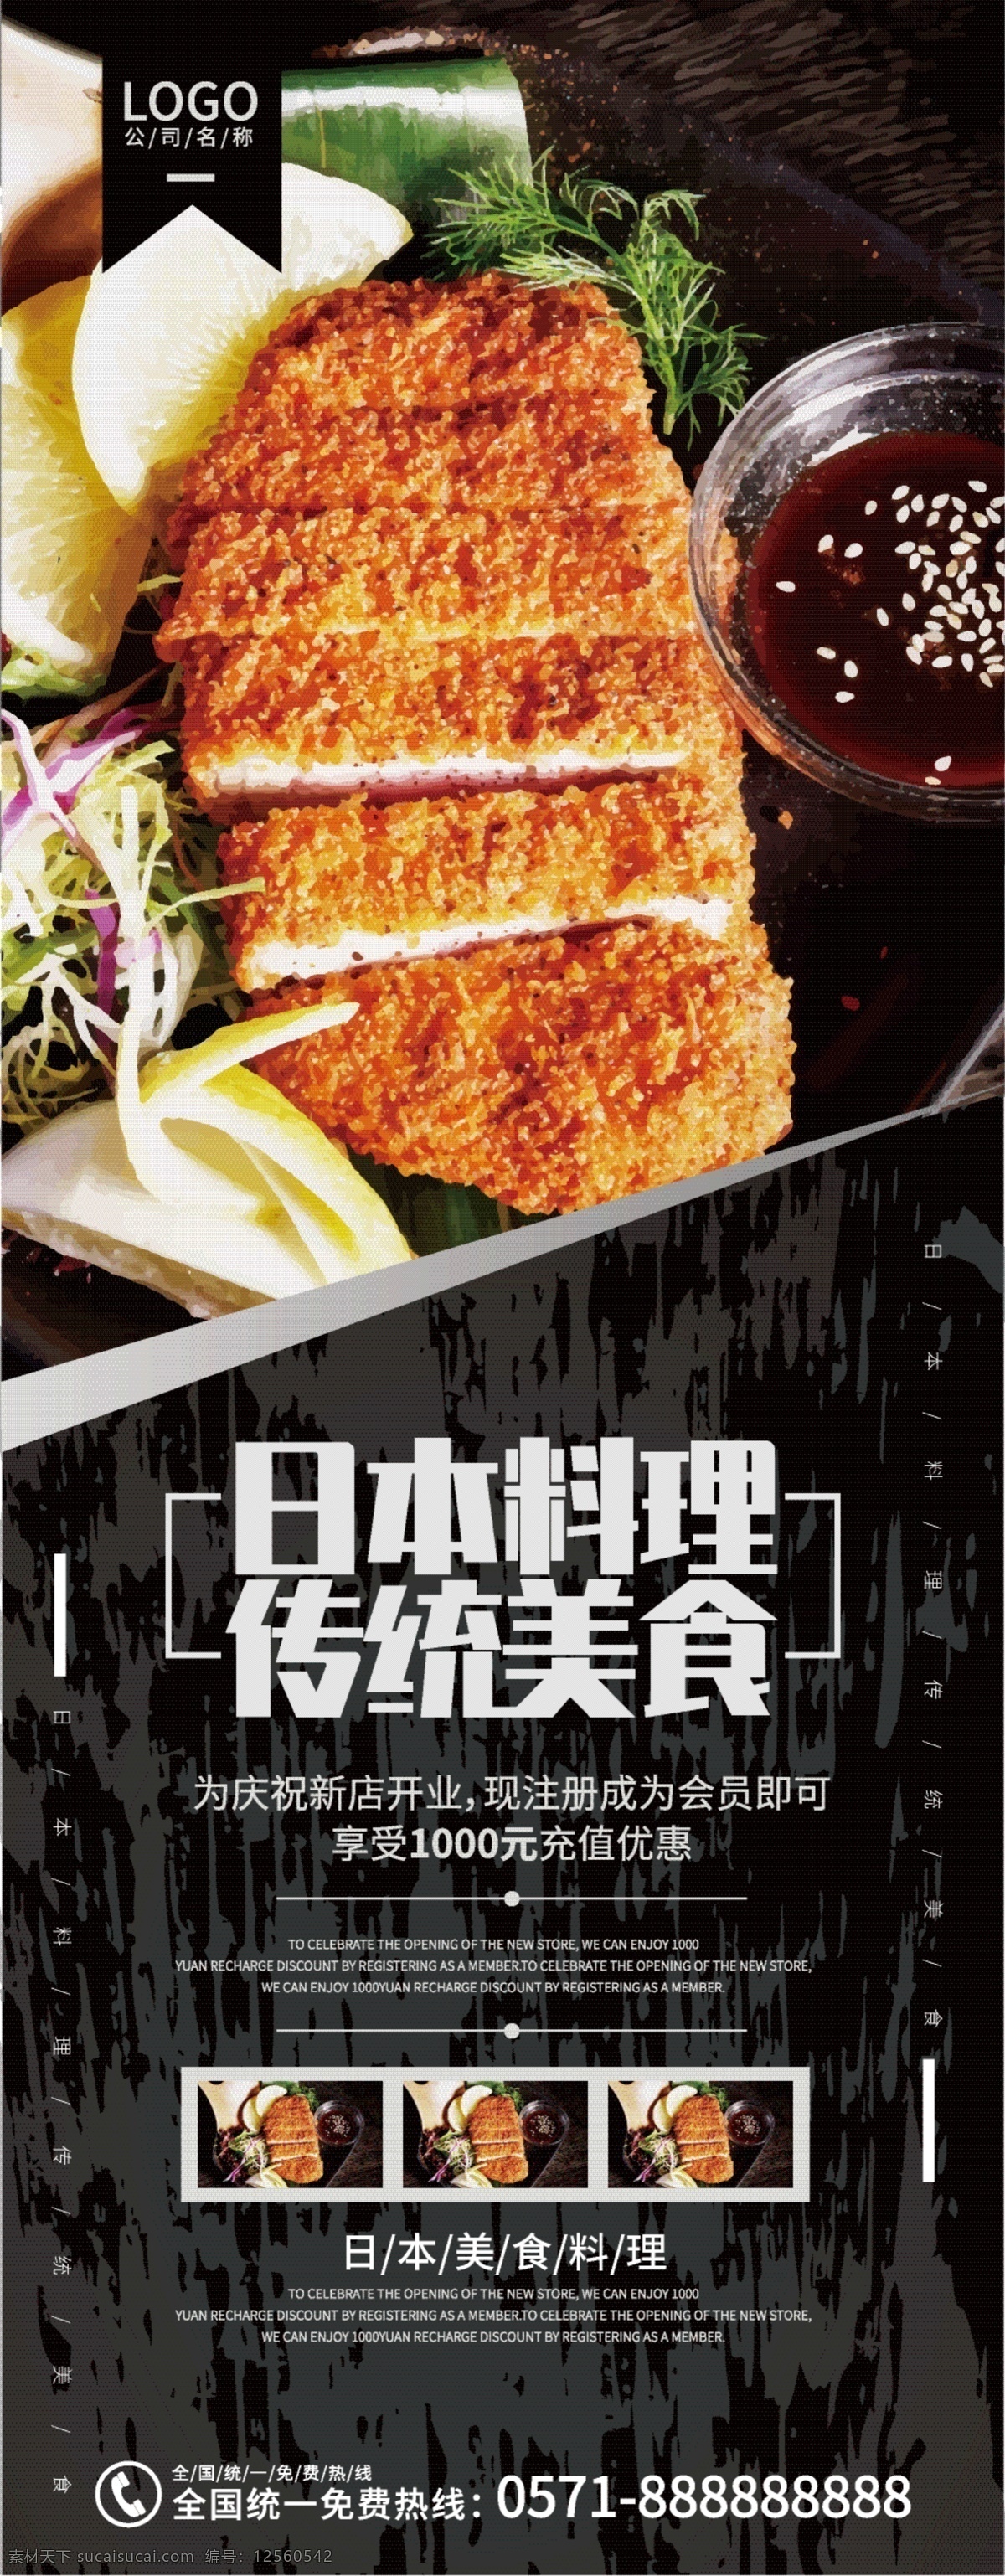 高端 日本料理 展架 日本美食 美食展架 美食宣传 美食店宣传 黑色